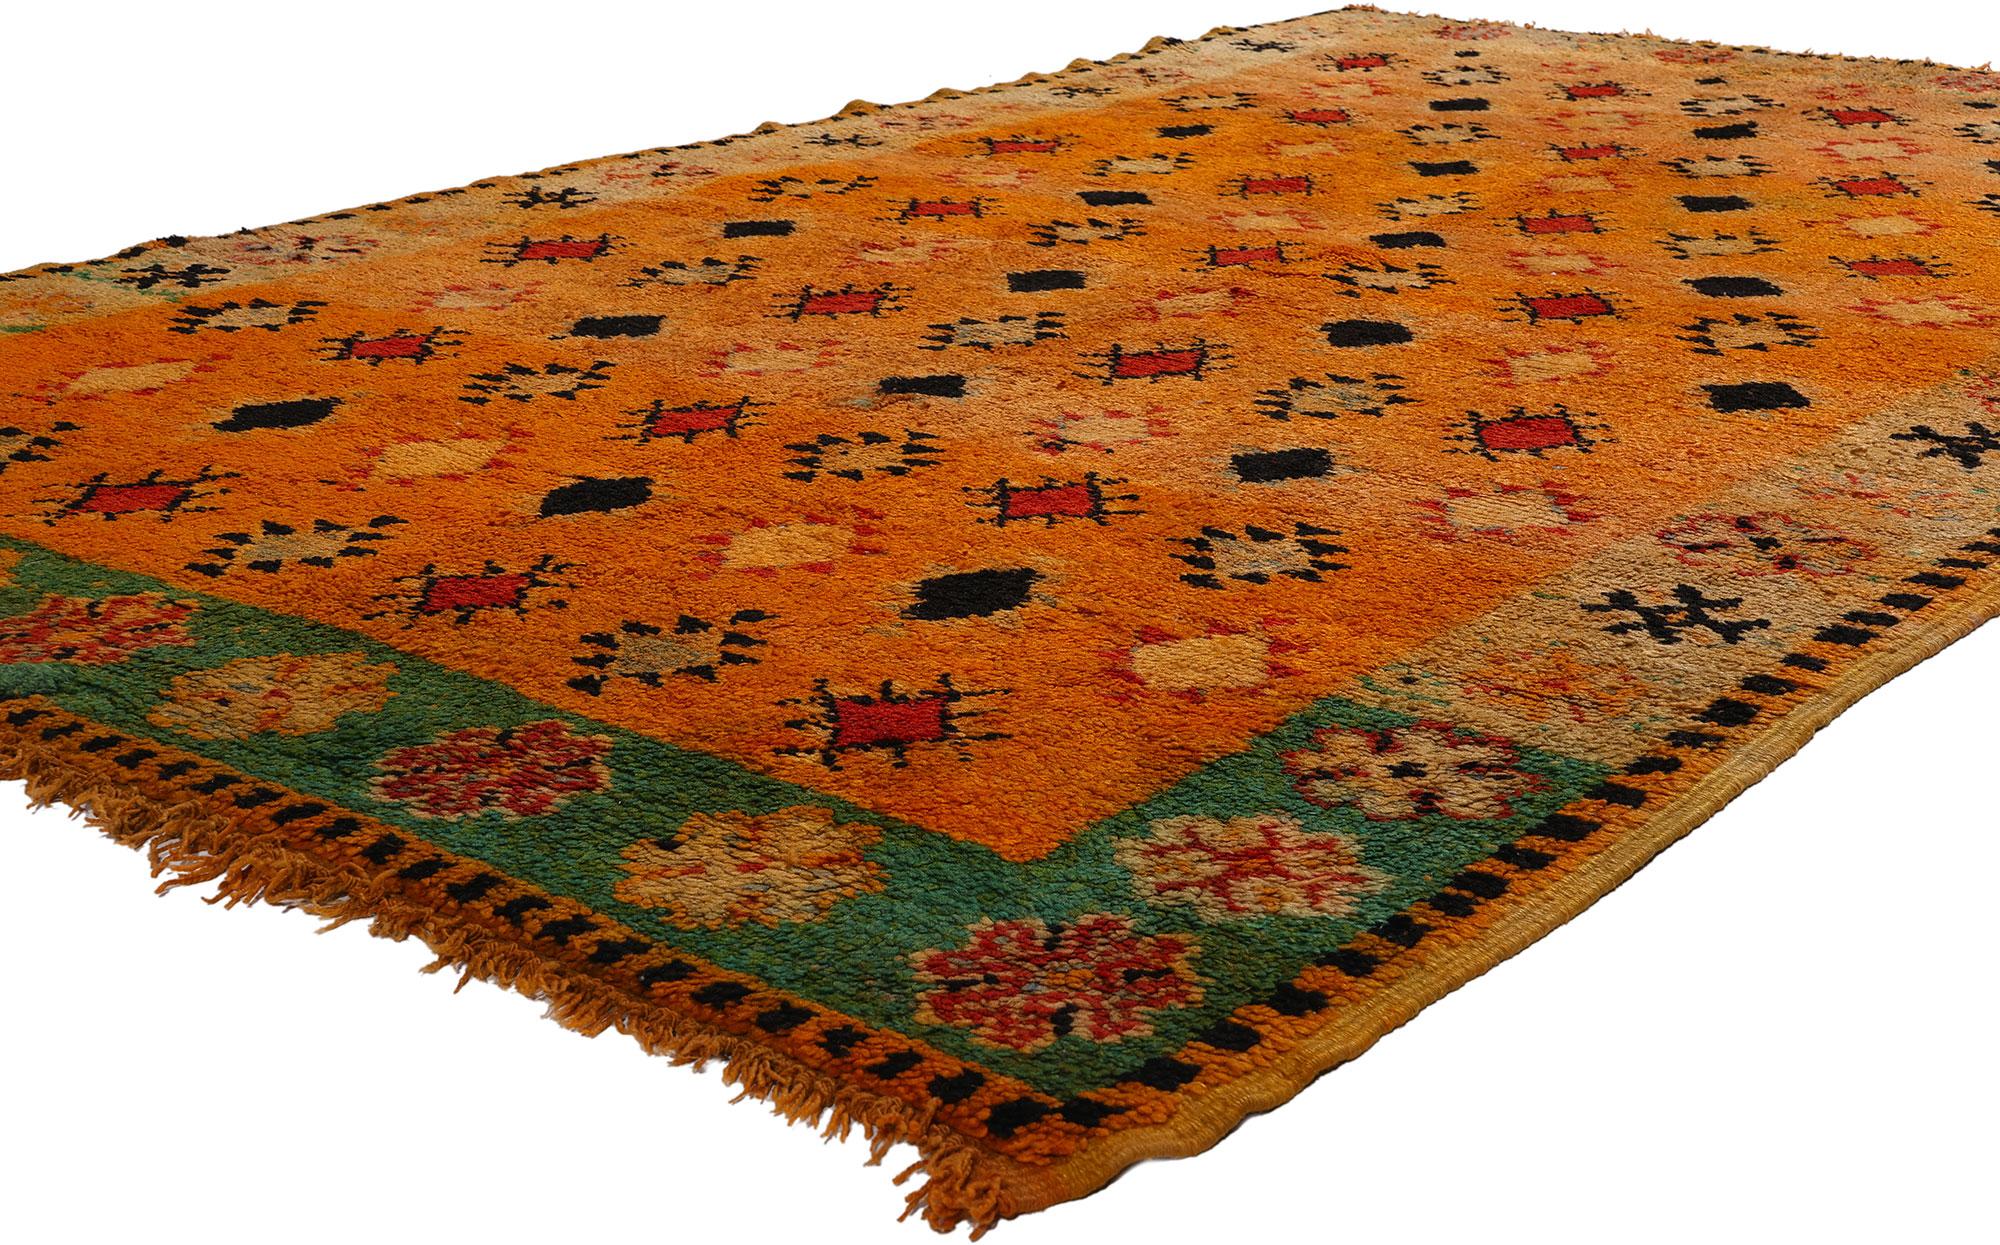 20173 Tapis marocain Vintage Orange Boujad, 05'02 x 09'00. Entrez dans le monde captivant de l'héritage marocain avec ce tapis marocain Boujad vintage en laine nouée à la main. Fabriqué avec un soin méticuleux, son fond orange audacieux rayonne de